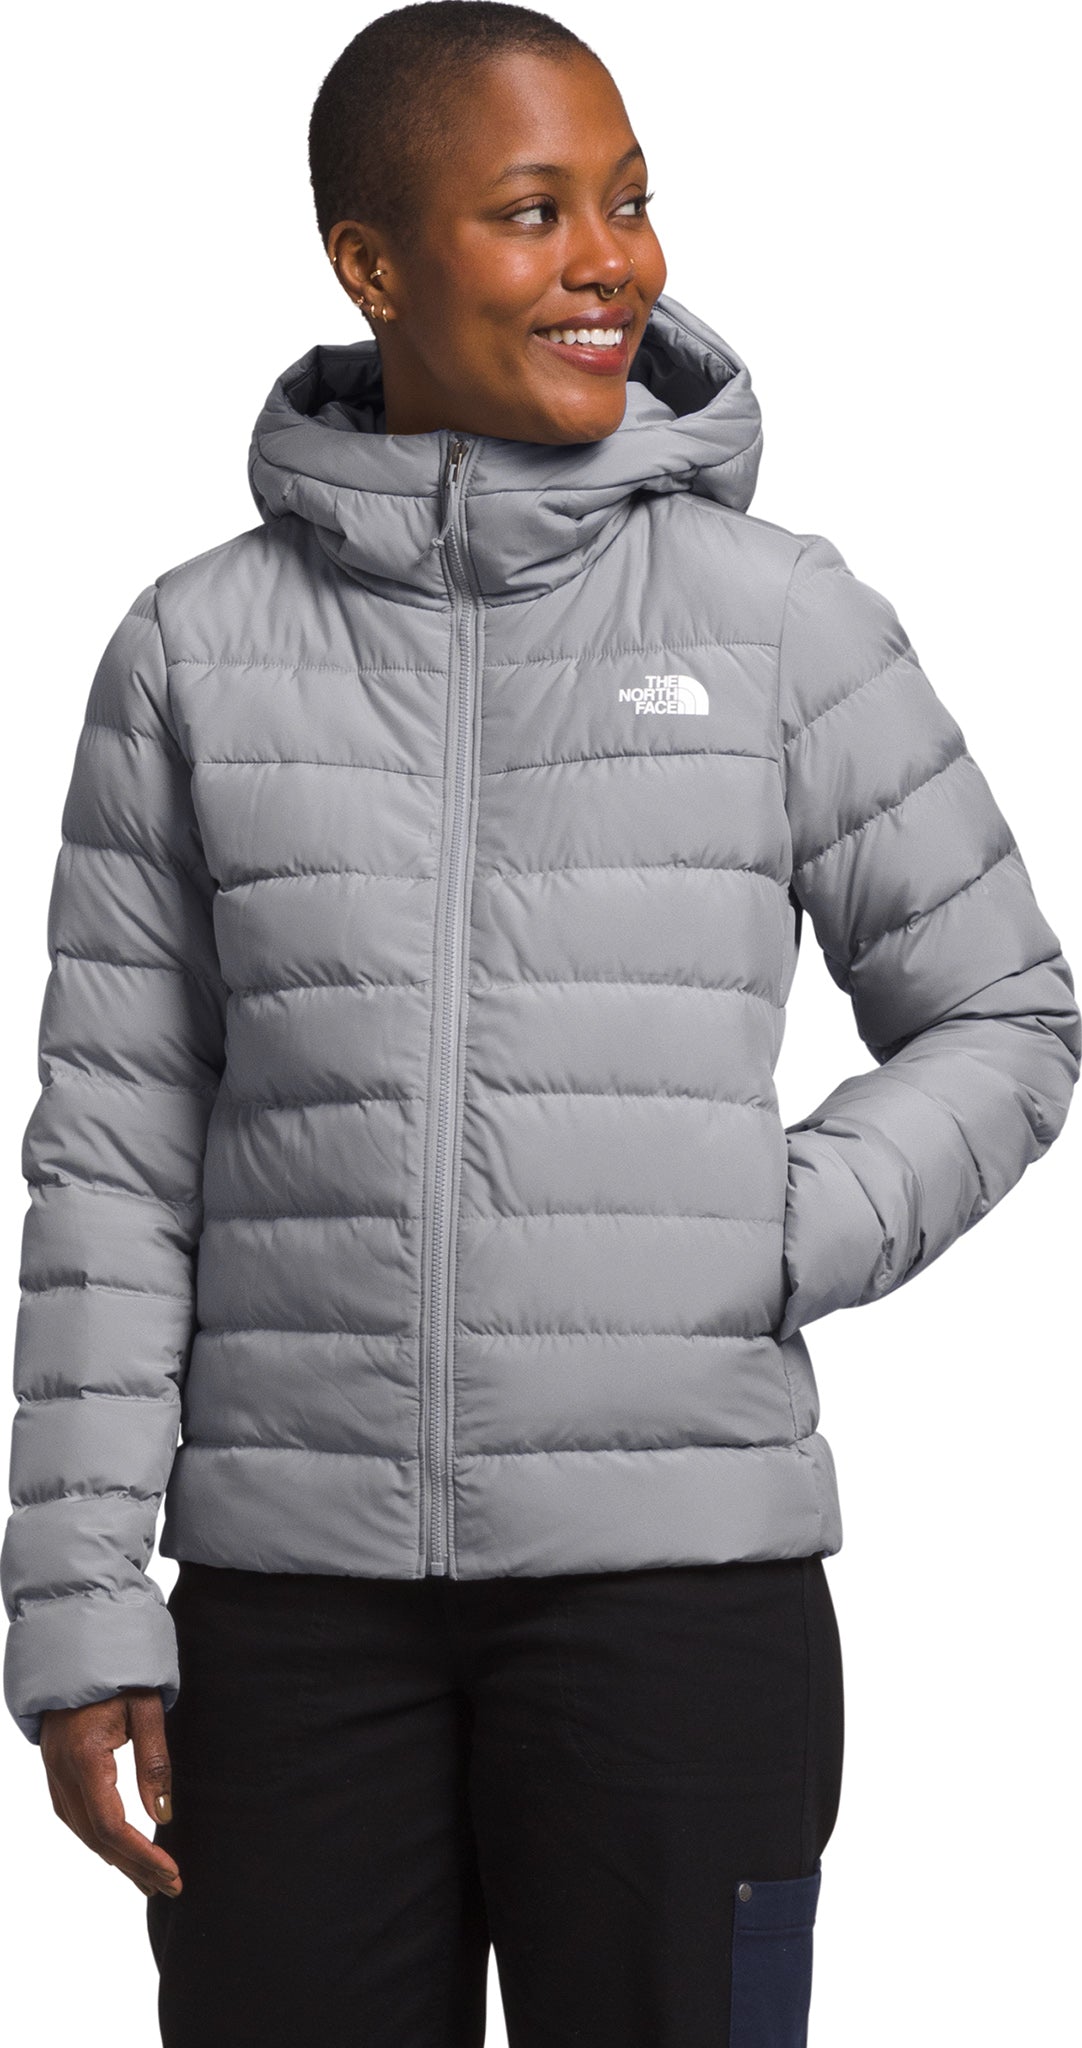 Manteau en duvet Corefire Windstopper® pour hommes | The North Face Canada